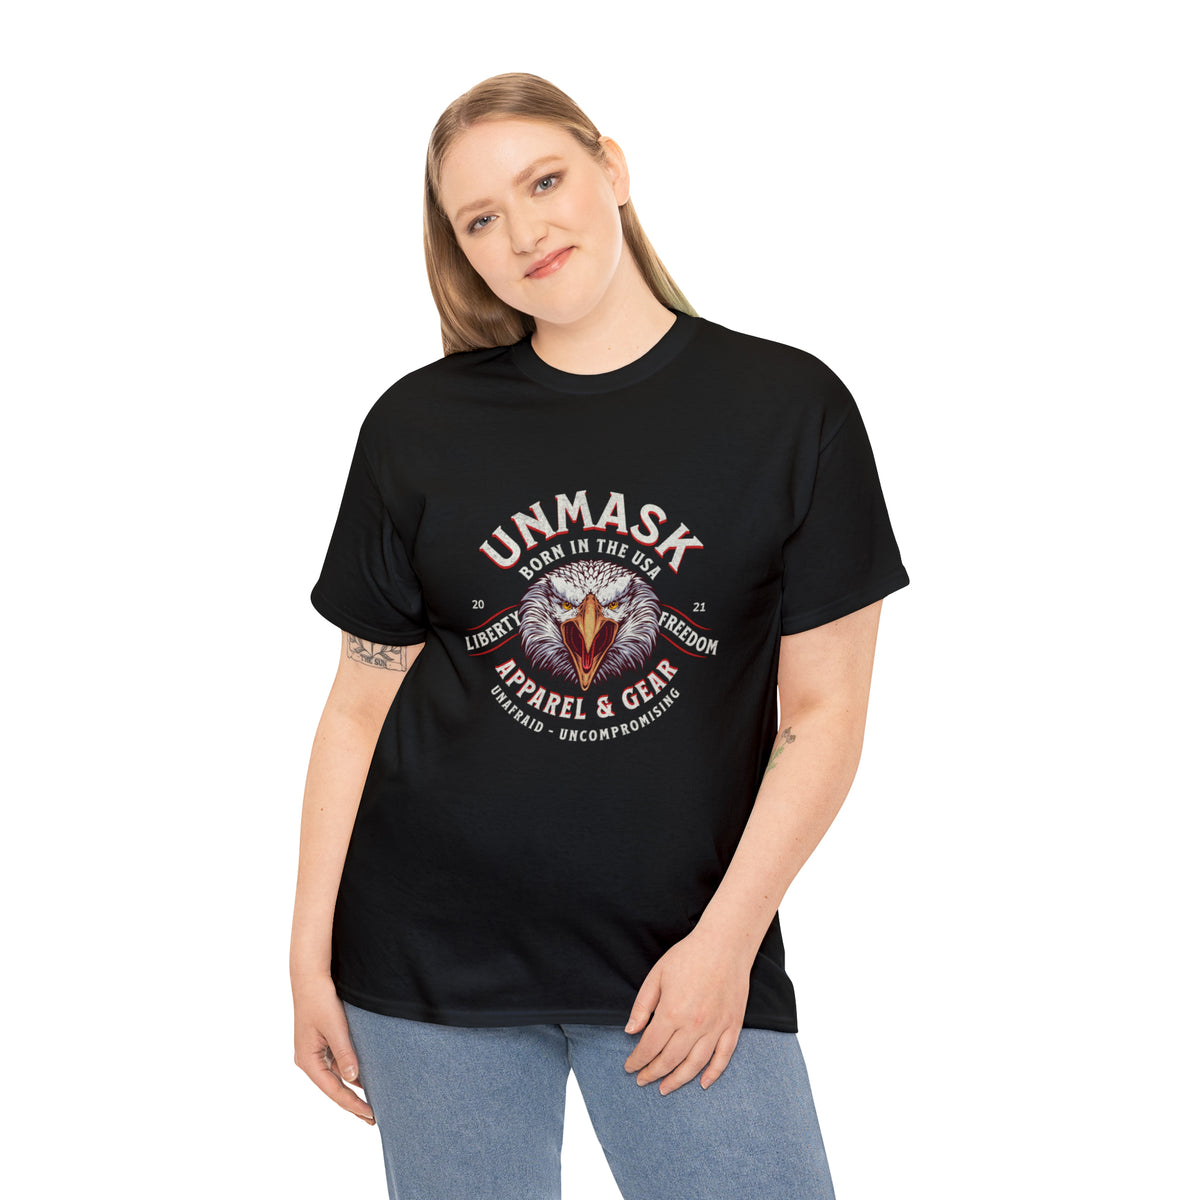 UnMask Eagle Crest T-Shirt